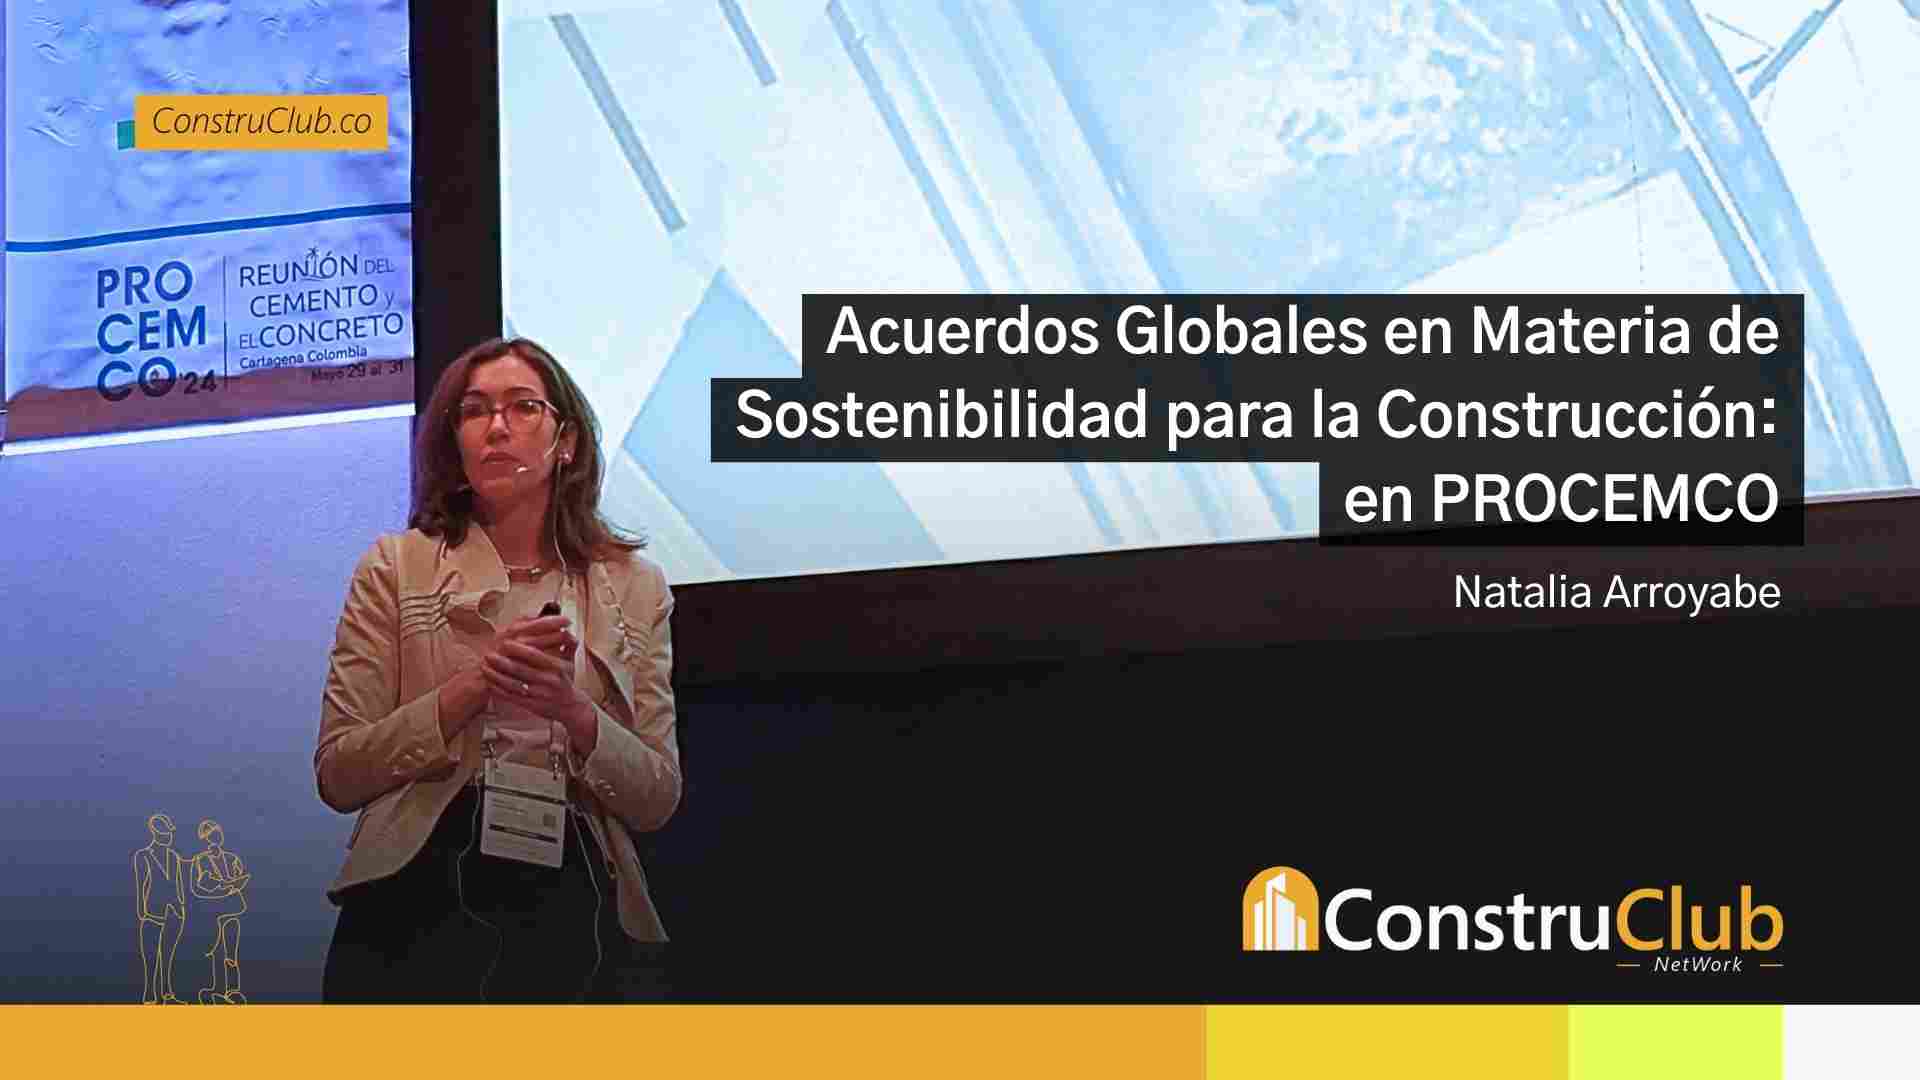 Acuerdos Globales en Materia de Sostenibilidad para la Construcción: Charla de Natalia Arroyabe en PROCEMCO